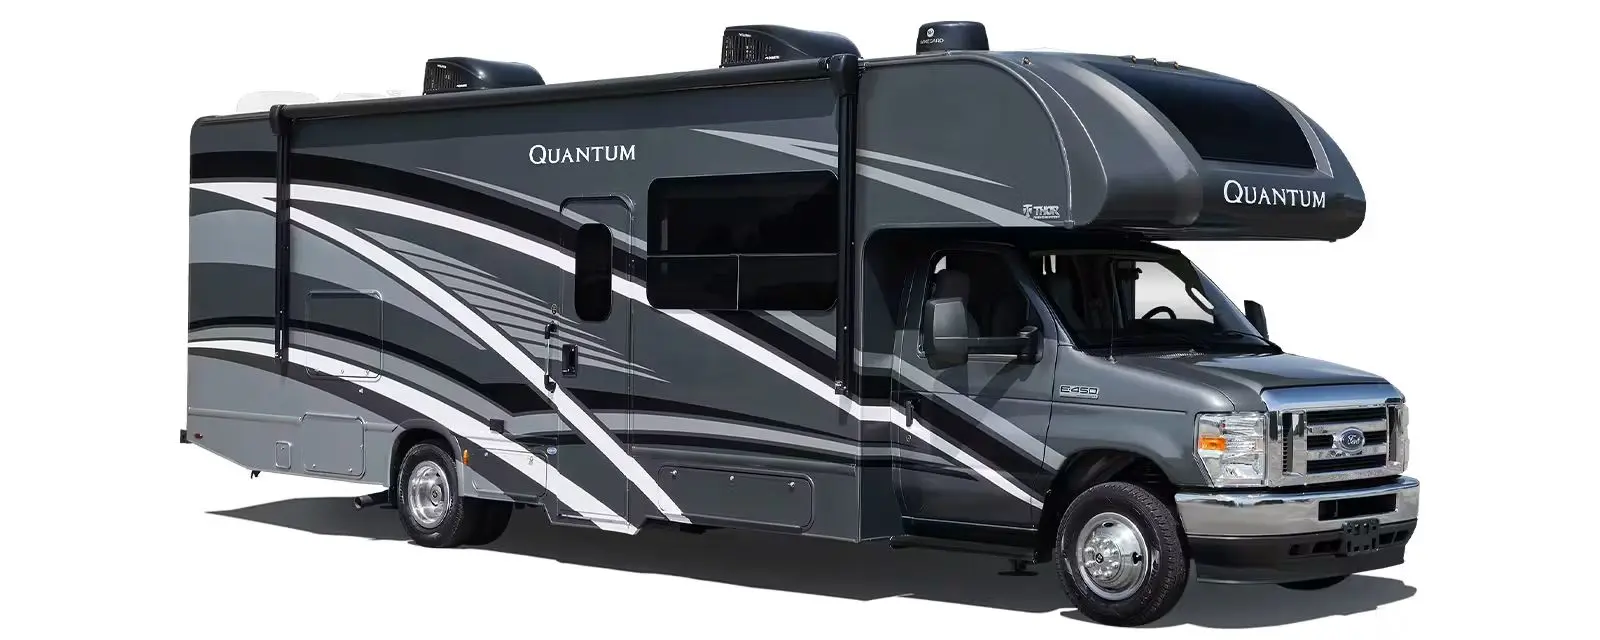 Quantum SE Class C Motor Home